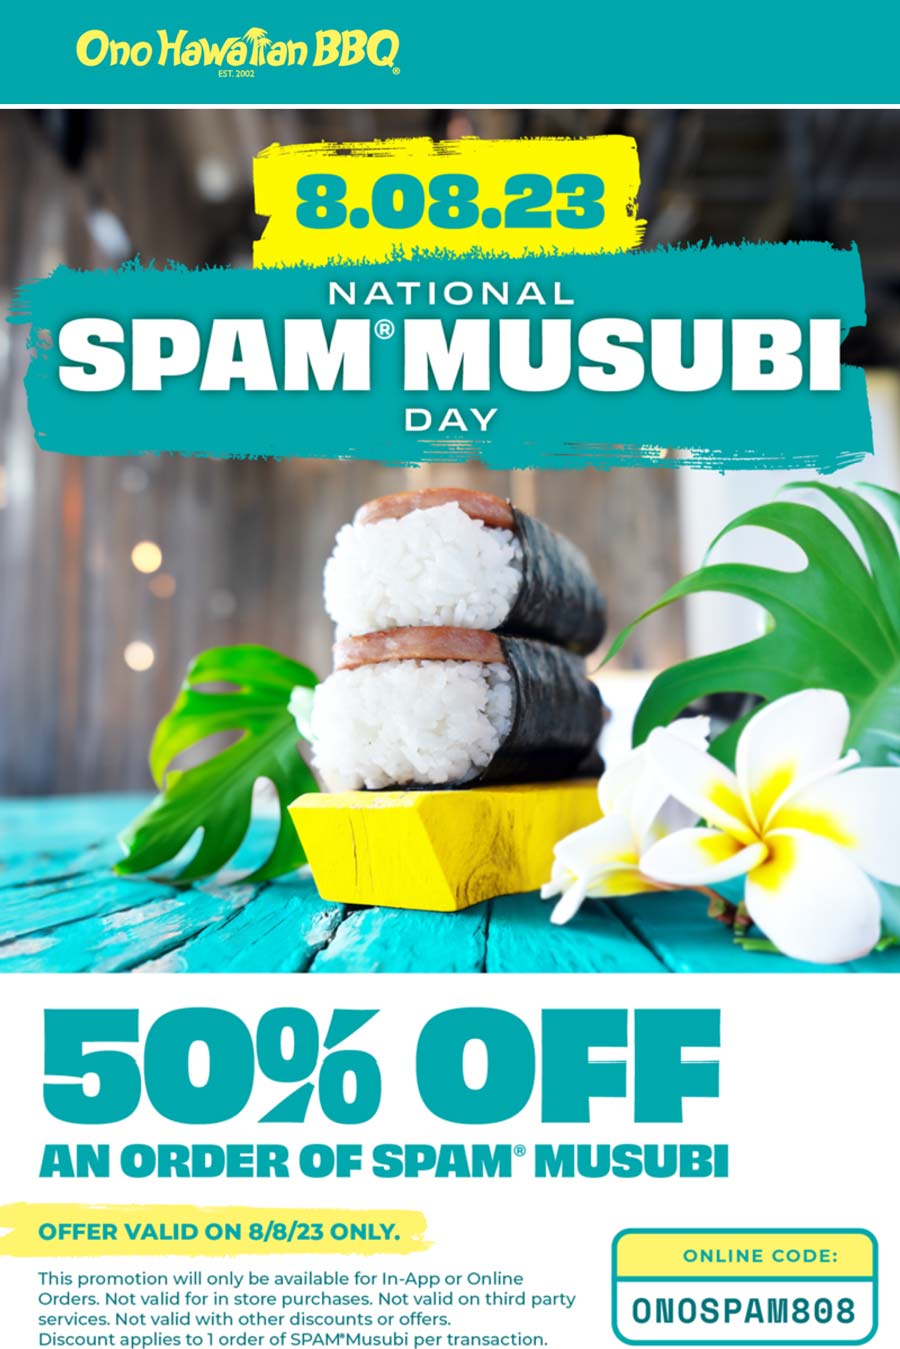 Ono Hawaiian BBQ restaurants Coupon  50% off spam musubi today at Ono Hawaiian BBQ restaurants via promo code ONOSPAM808 #onohawaiianbbq 